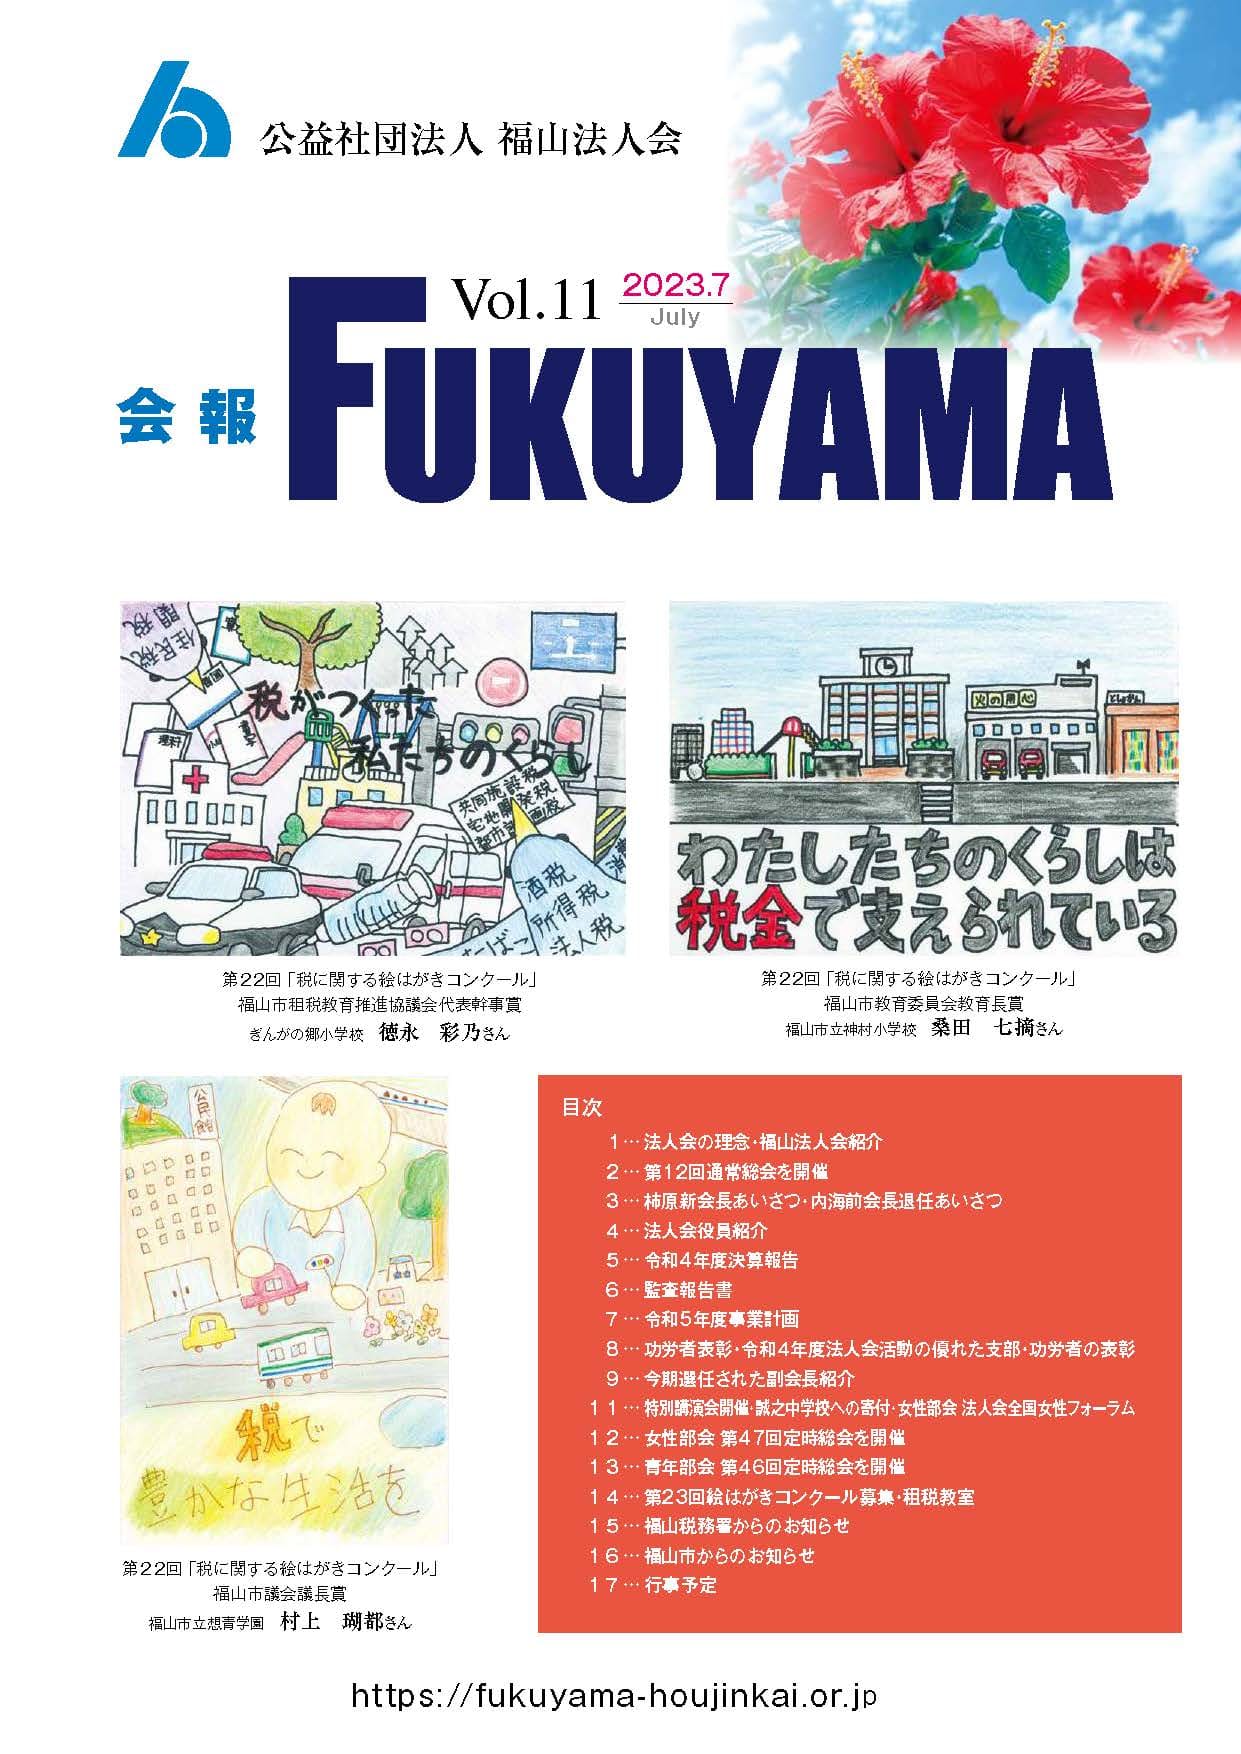 会報FUKUYAMA 2022 Vol.11